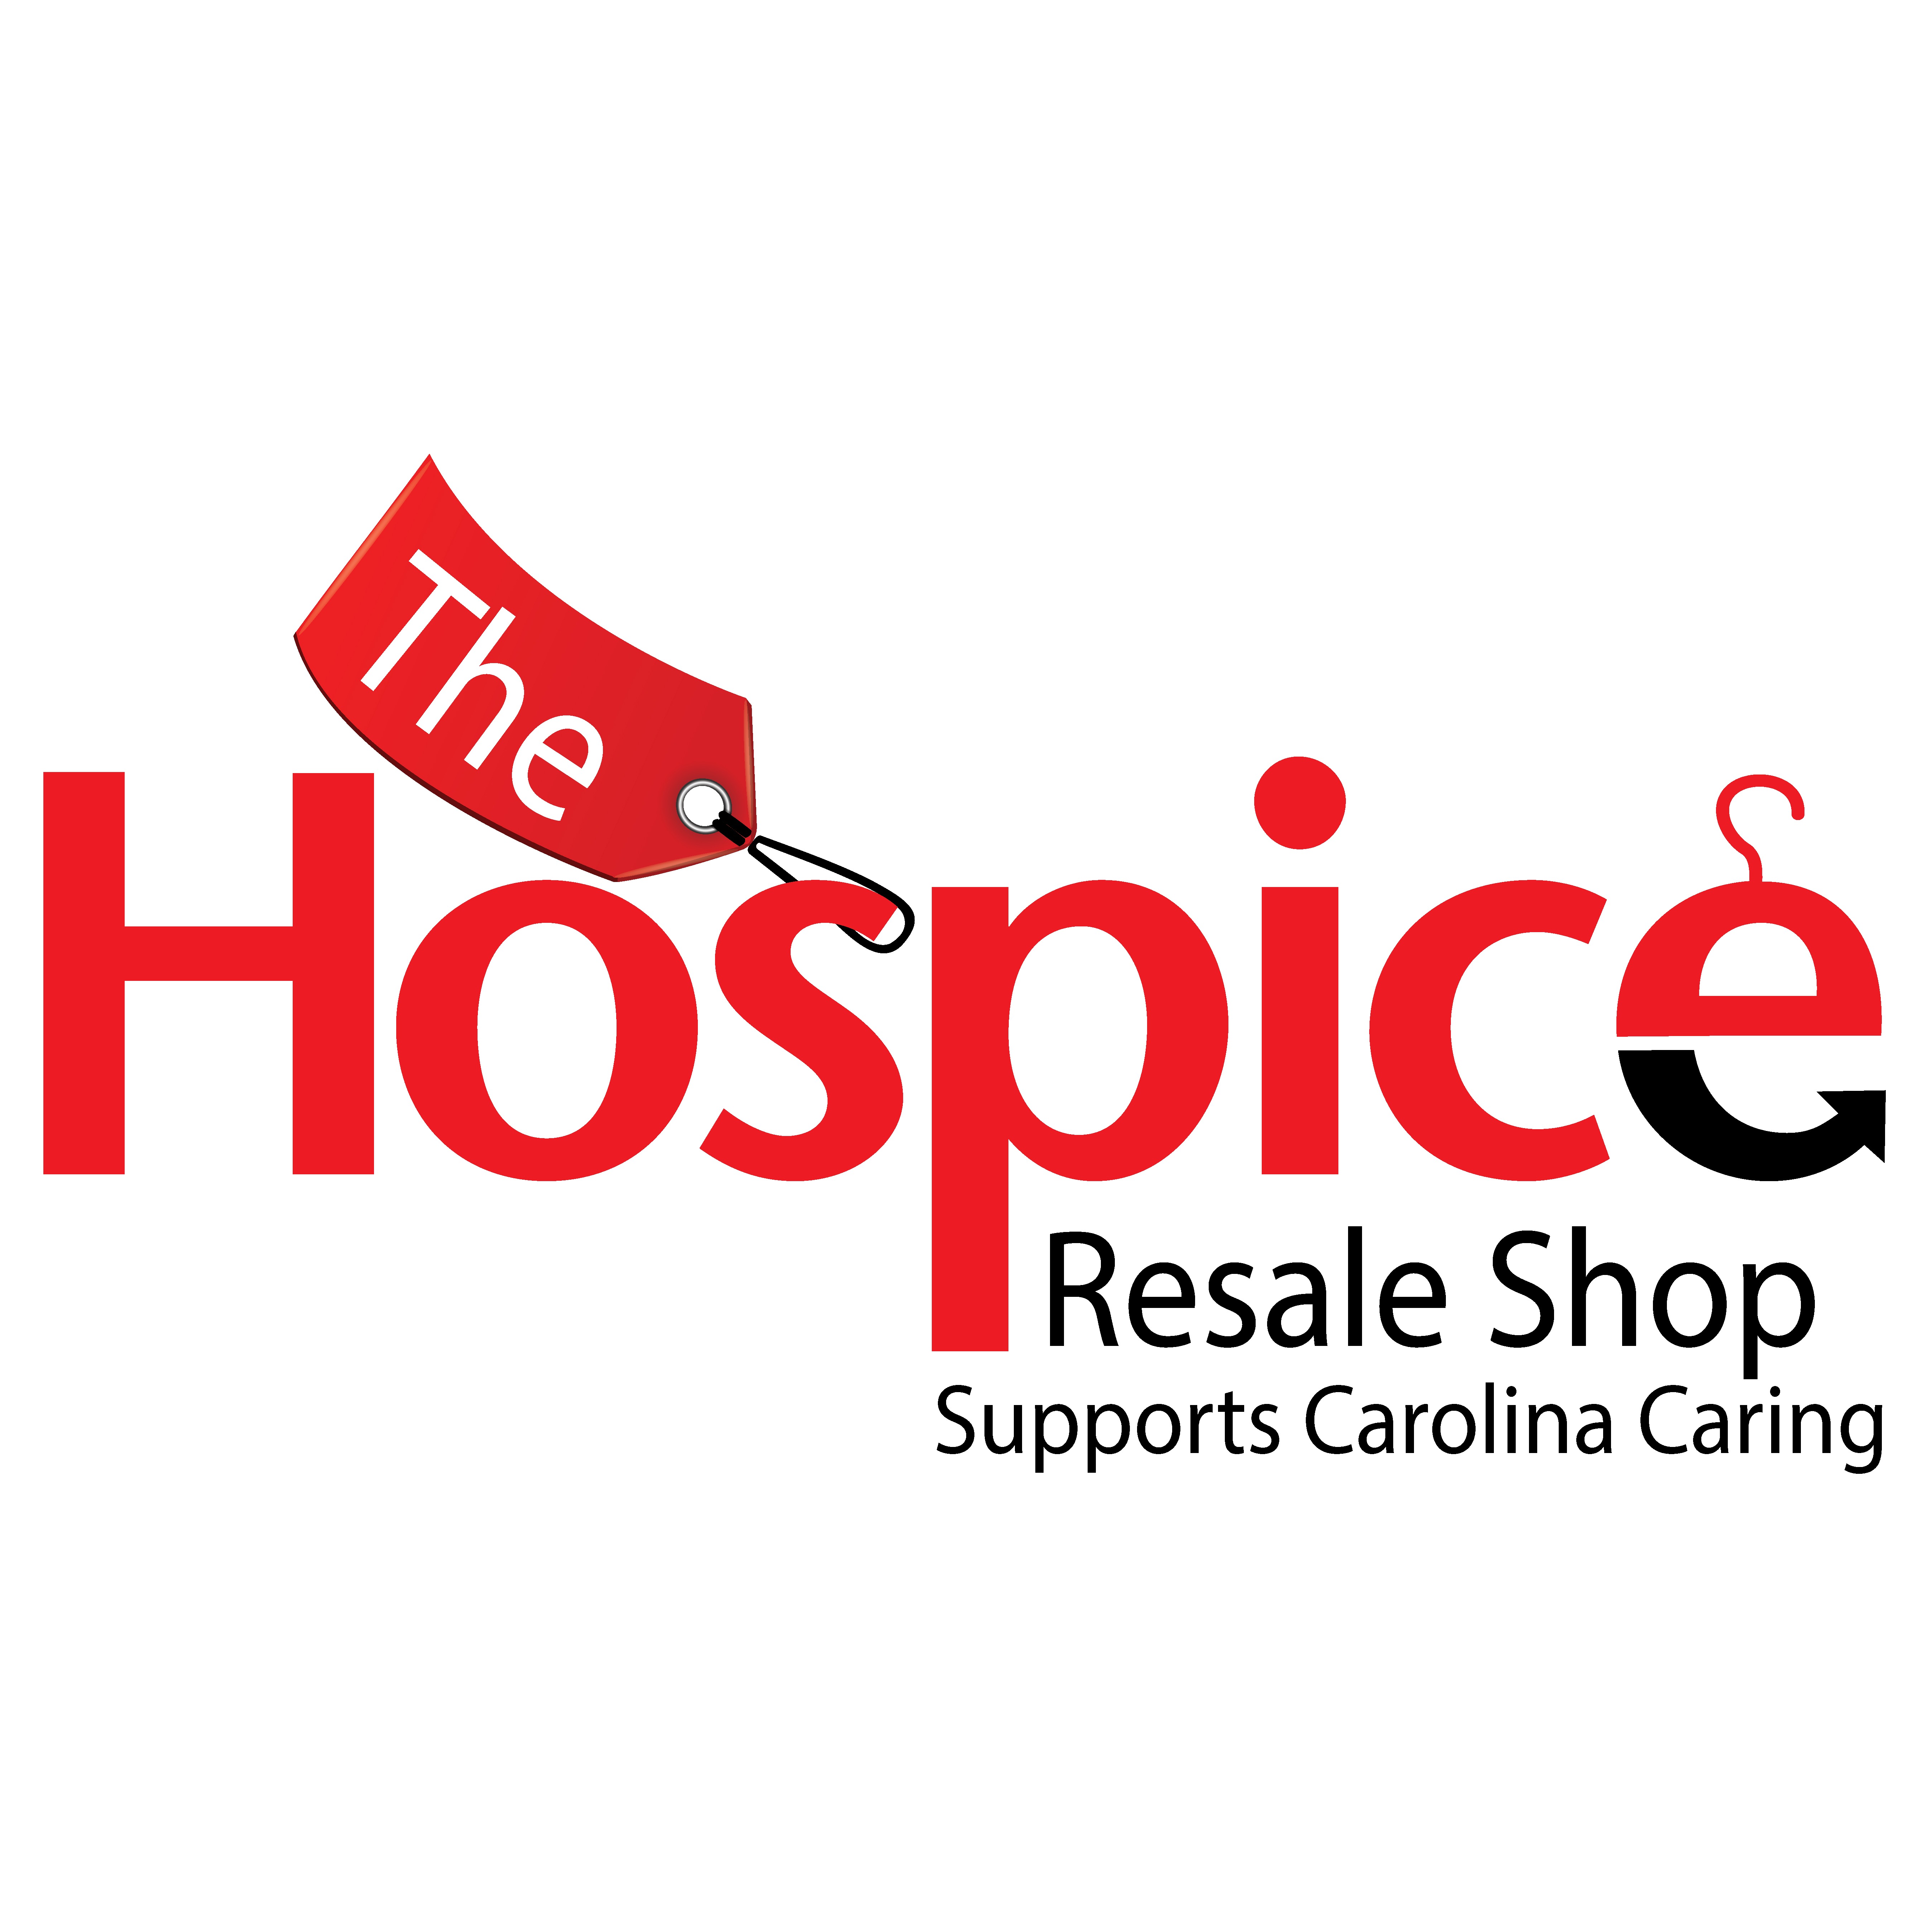 Hospice Resale Shop